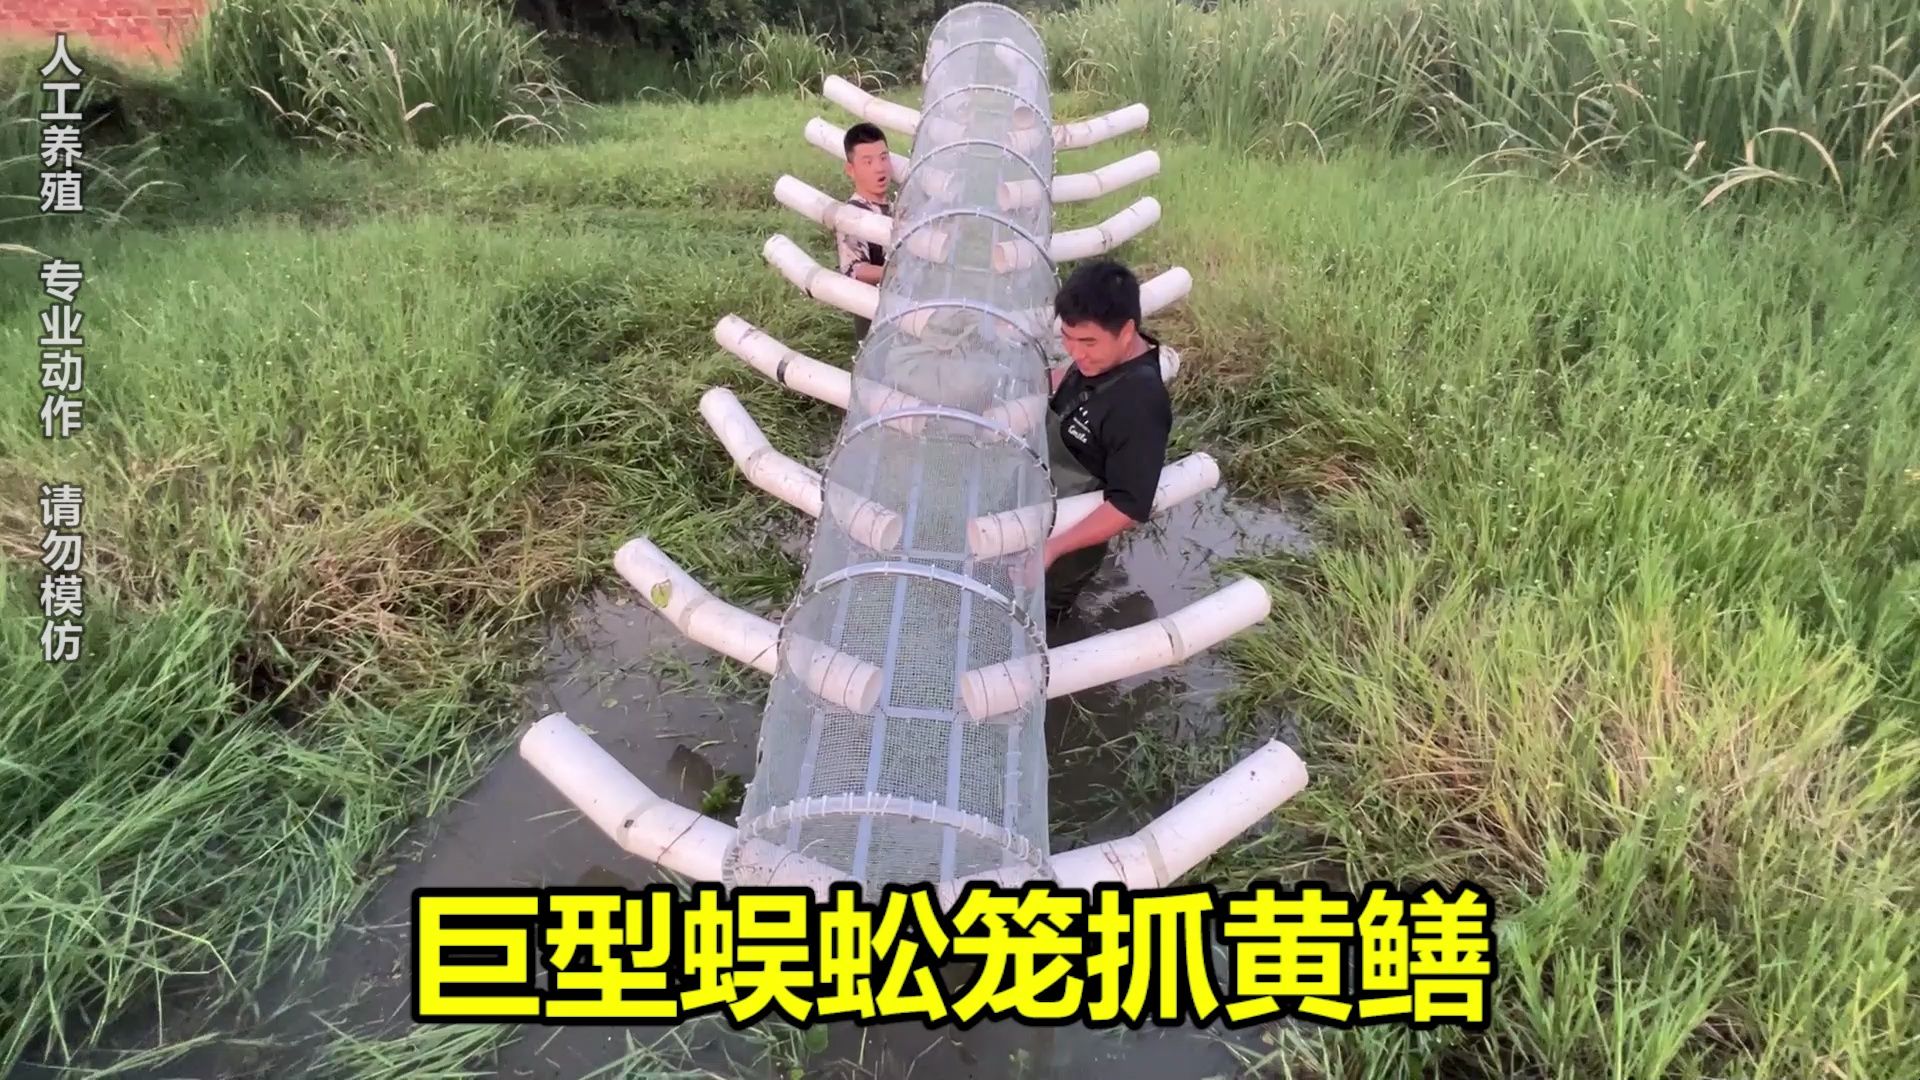 自制巨型蜈蚣笼抓黄鳝，花一万二看看能上多少货